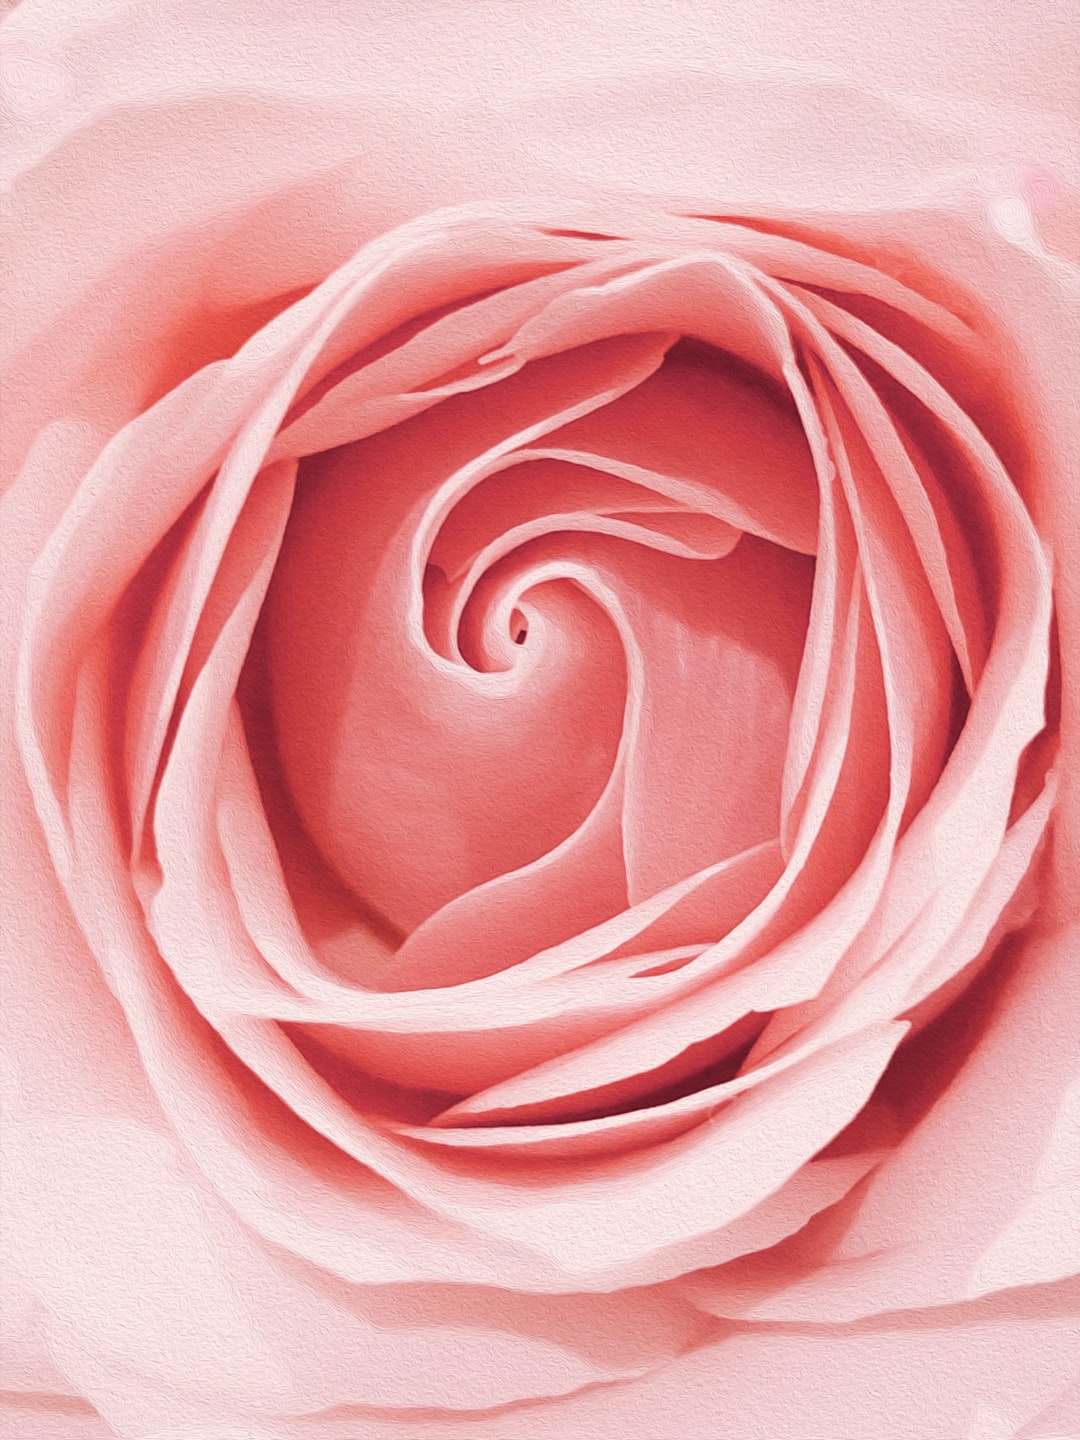 Cute Rose Wallpapers